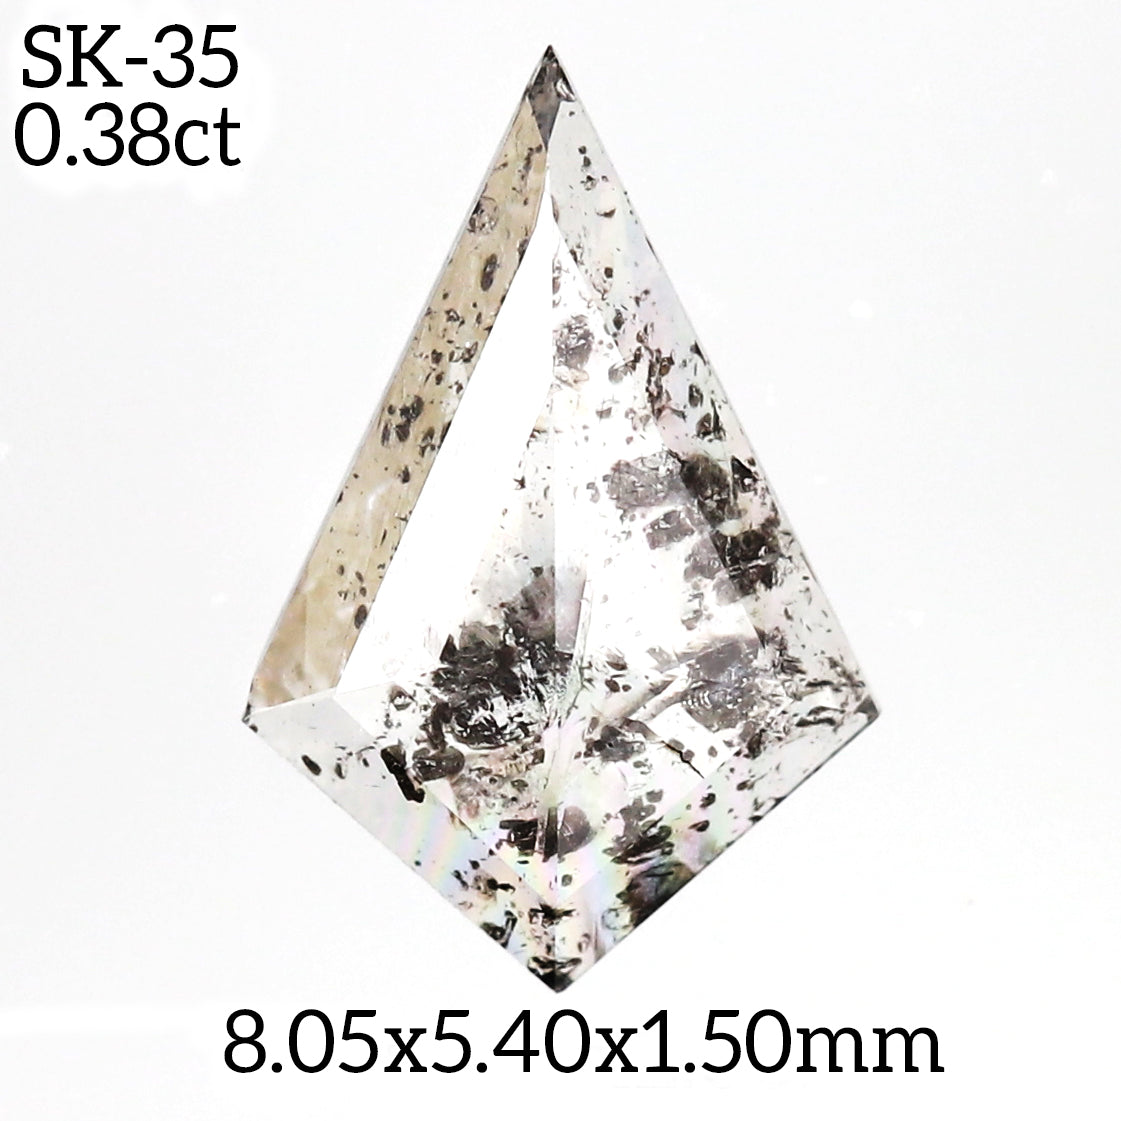 SK35 - Salt and pepper kite diamond